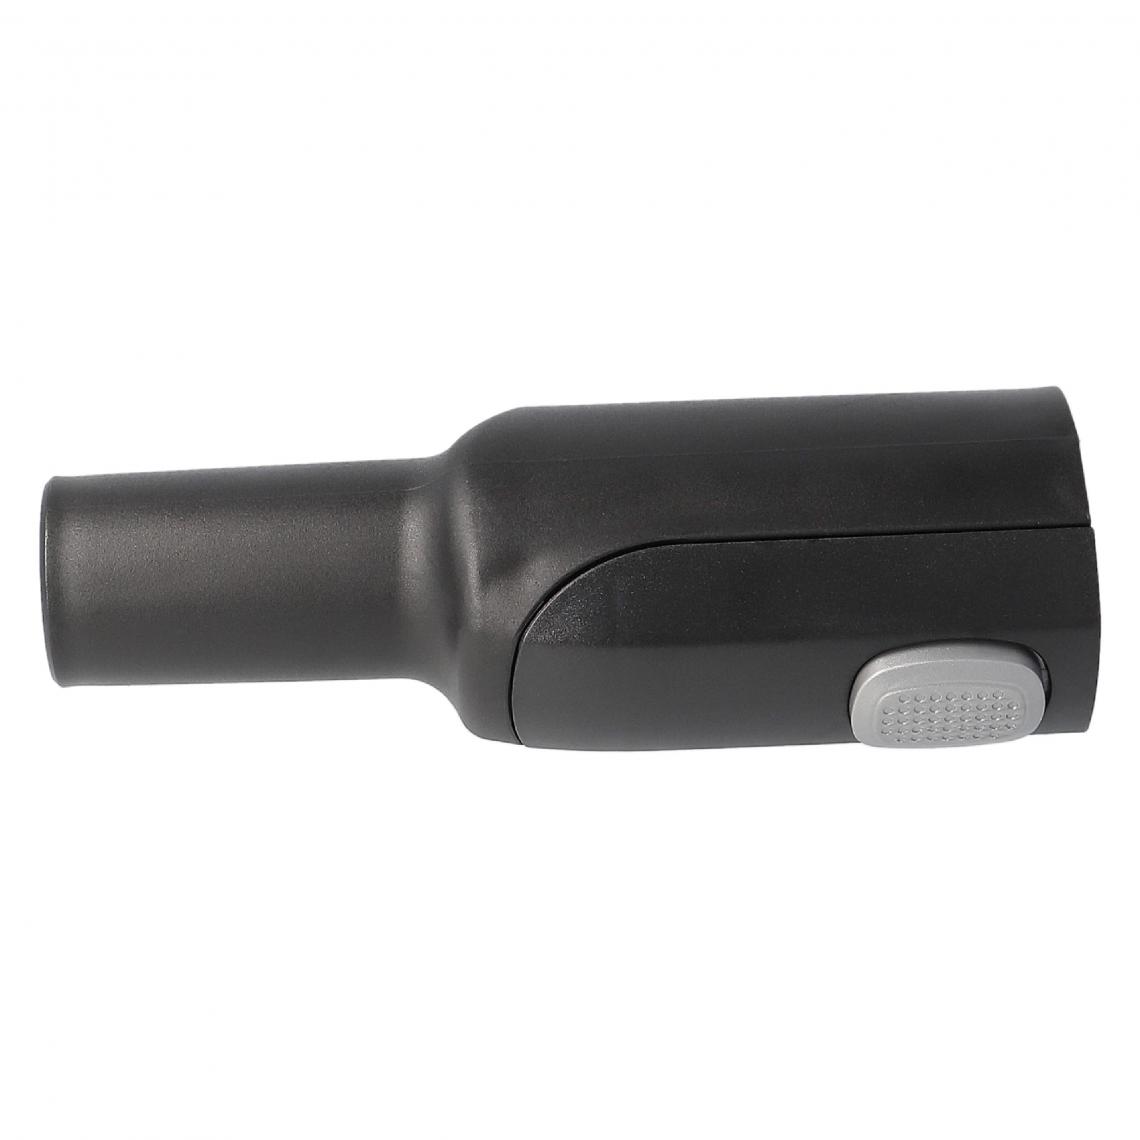 Vhbw - vhbw Adaptateur pour aspirateur Max-In 36mm à raccord 32mm compatible avec AEG/Electrolux Ultra Silencer ZUS3920 - noir, plastique - Accessoire entretien des sols